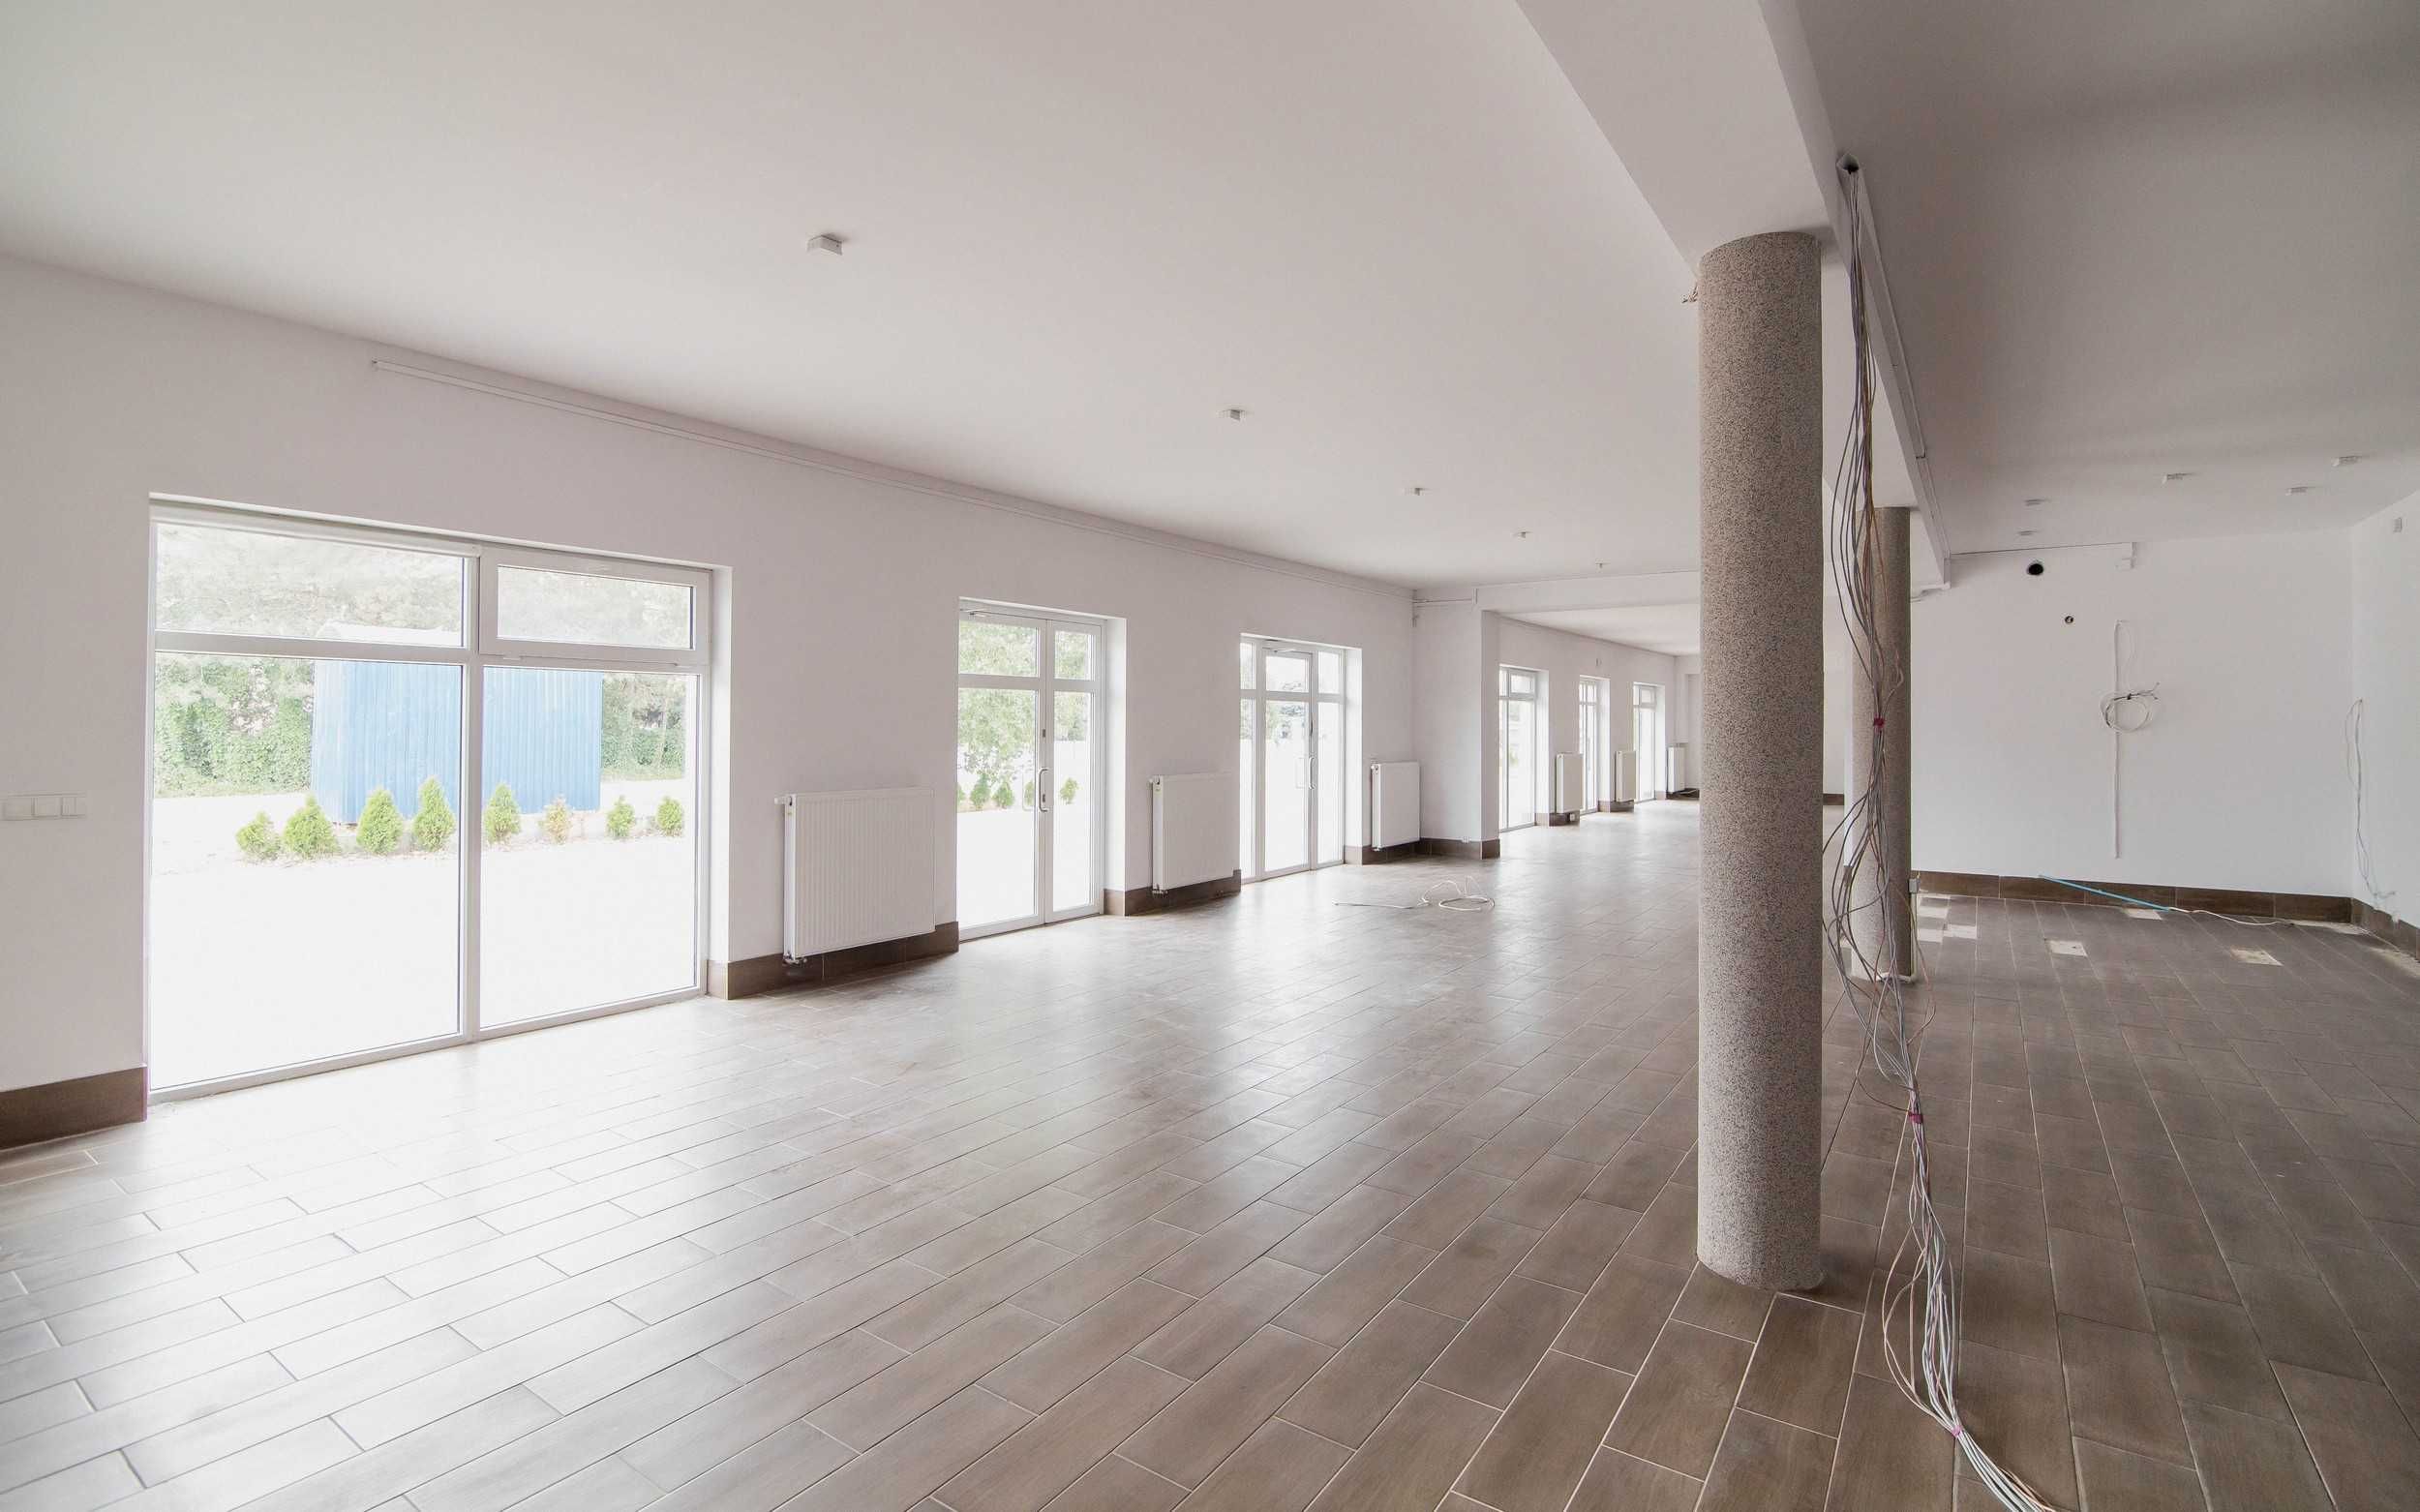 130 m², Umiejscowienie: w domu prywatnym,
Parter, Dostępny od zaraz